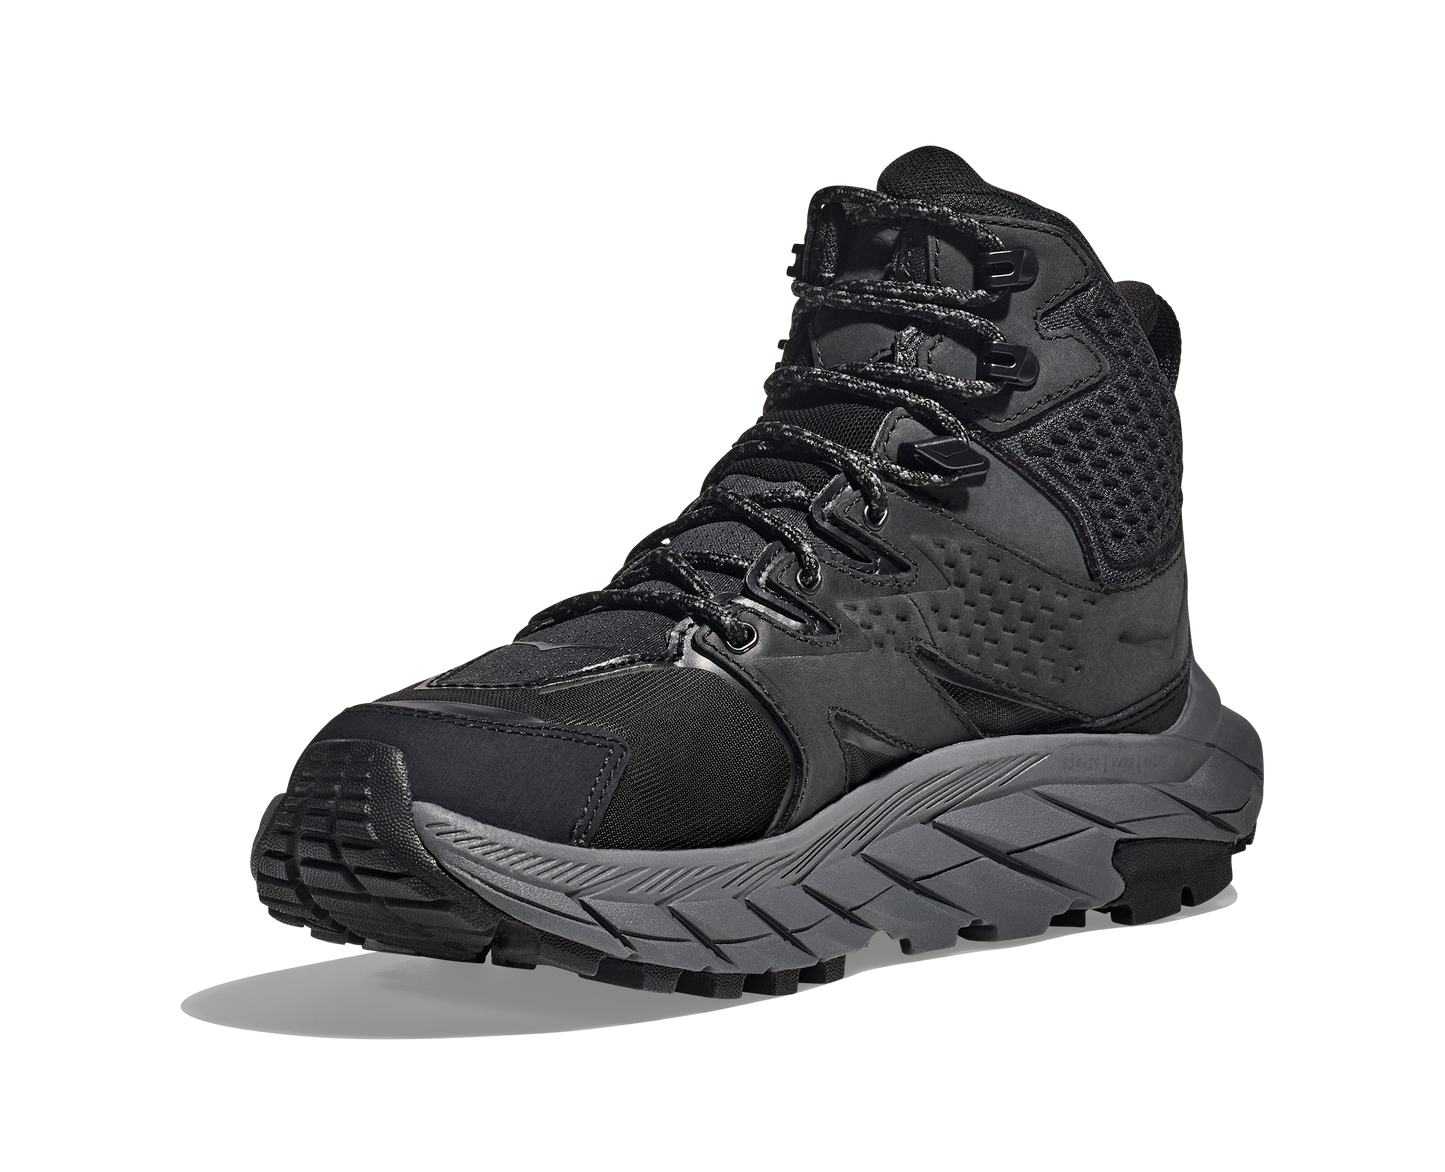 Anacapa W GTX mid, svart vattentät sko perfekt för vandring i alla underlag och väder. Hos Hoka specialisterna i Sverige.